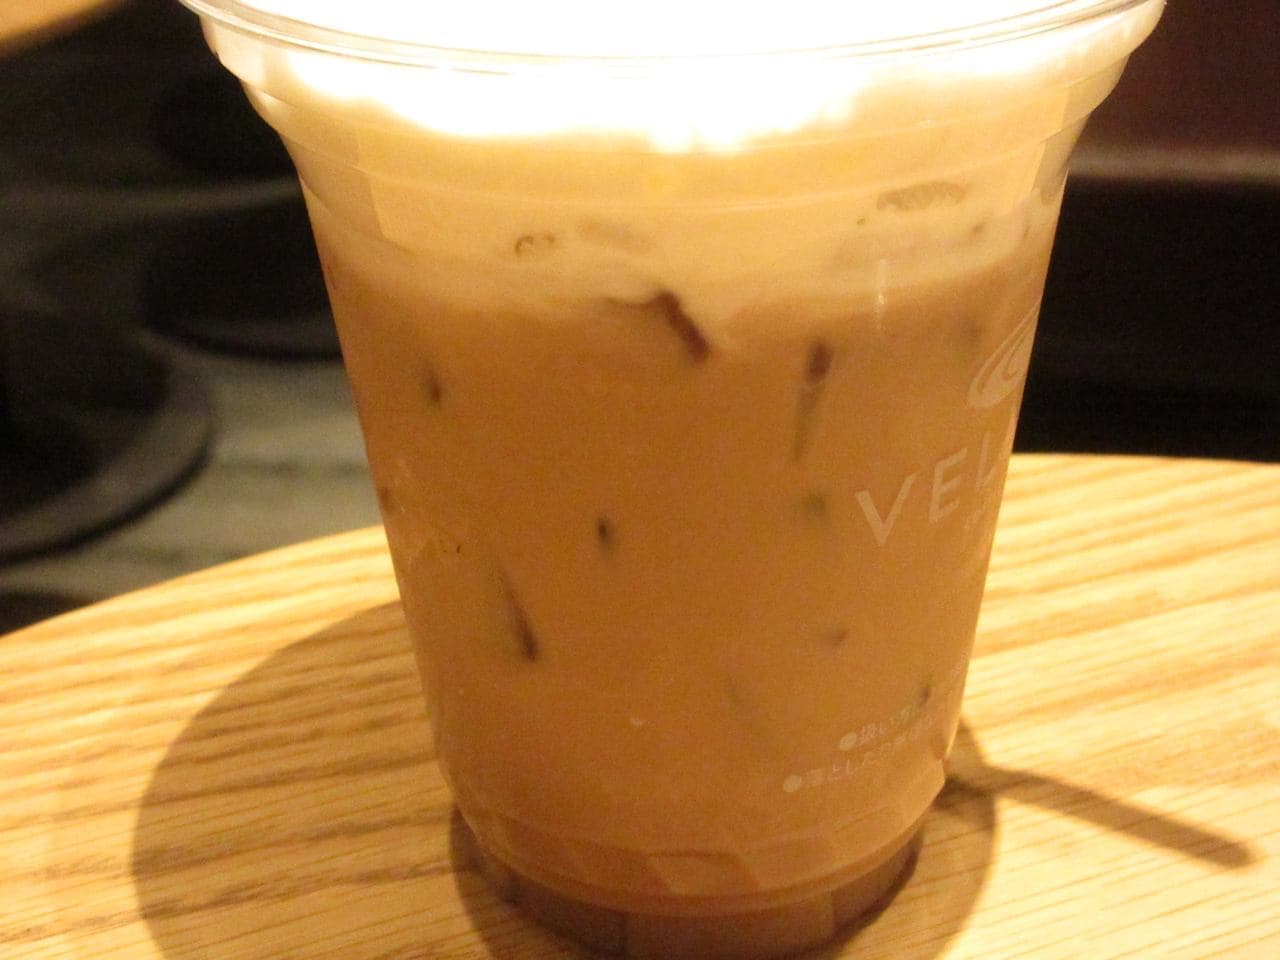 "VELUDO Cafe au lait (hot / ice)" in Shibuya "Verudo Coffee Can"